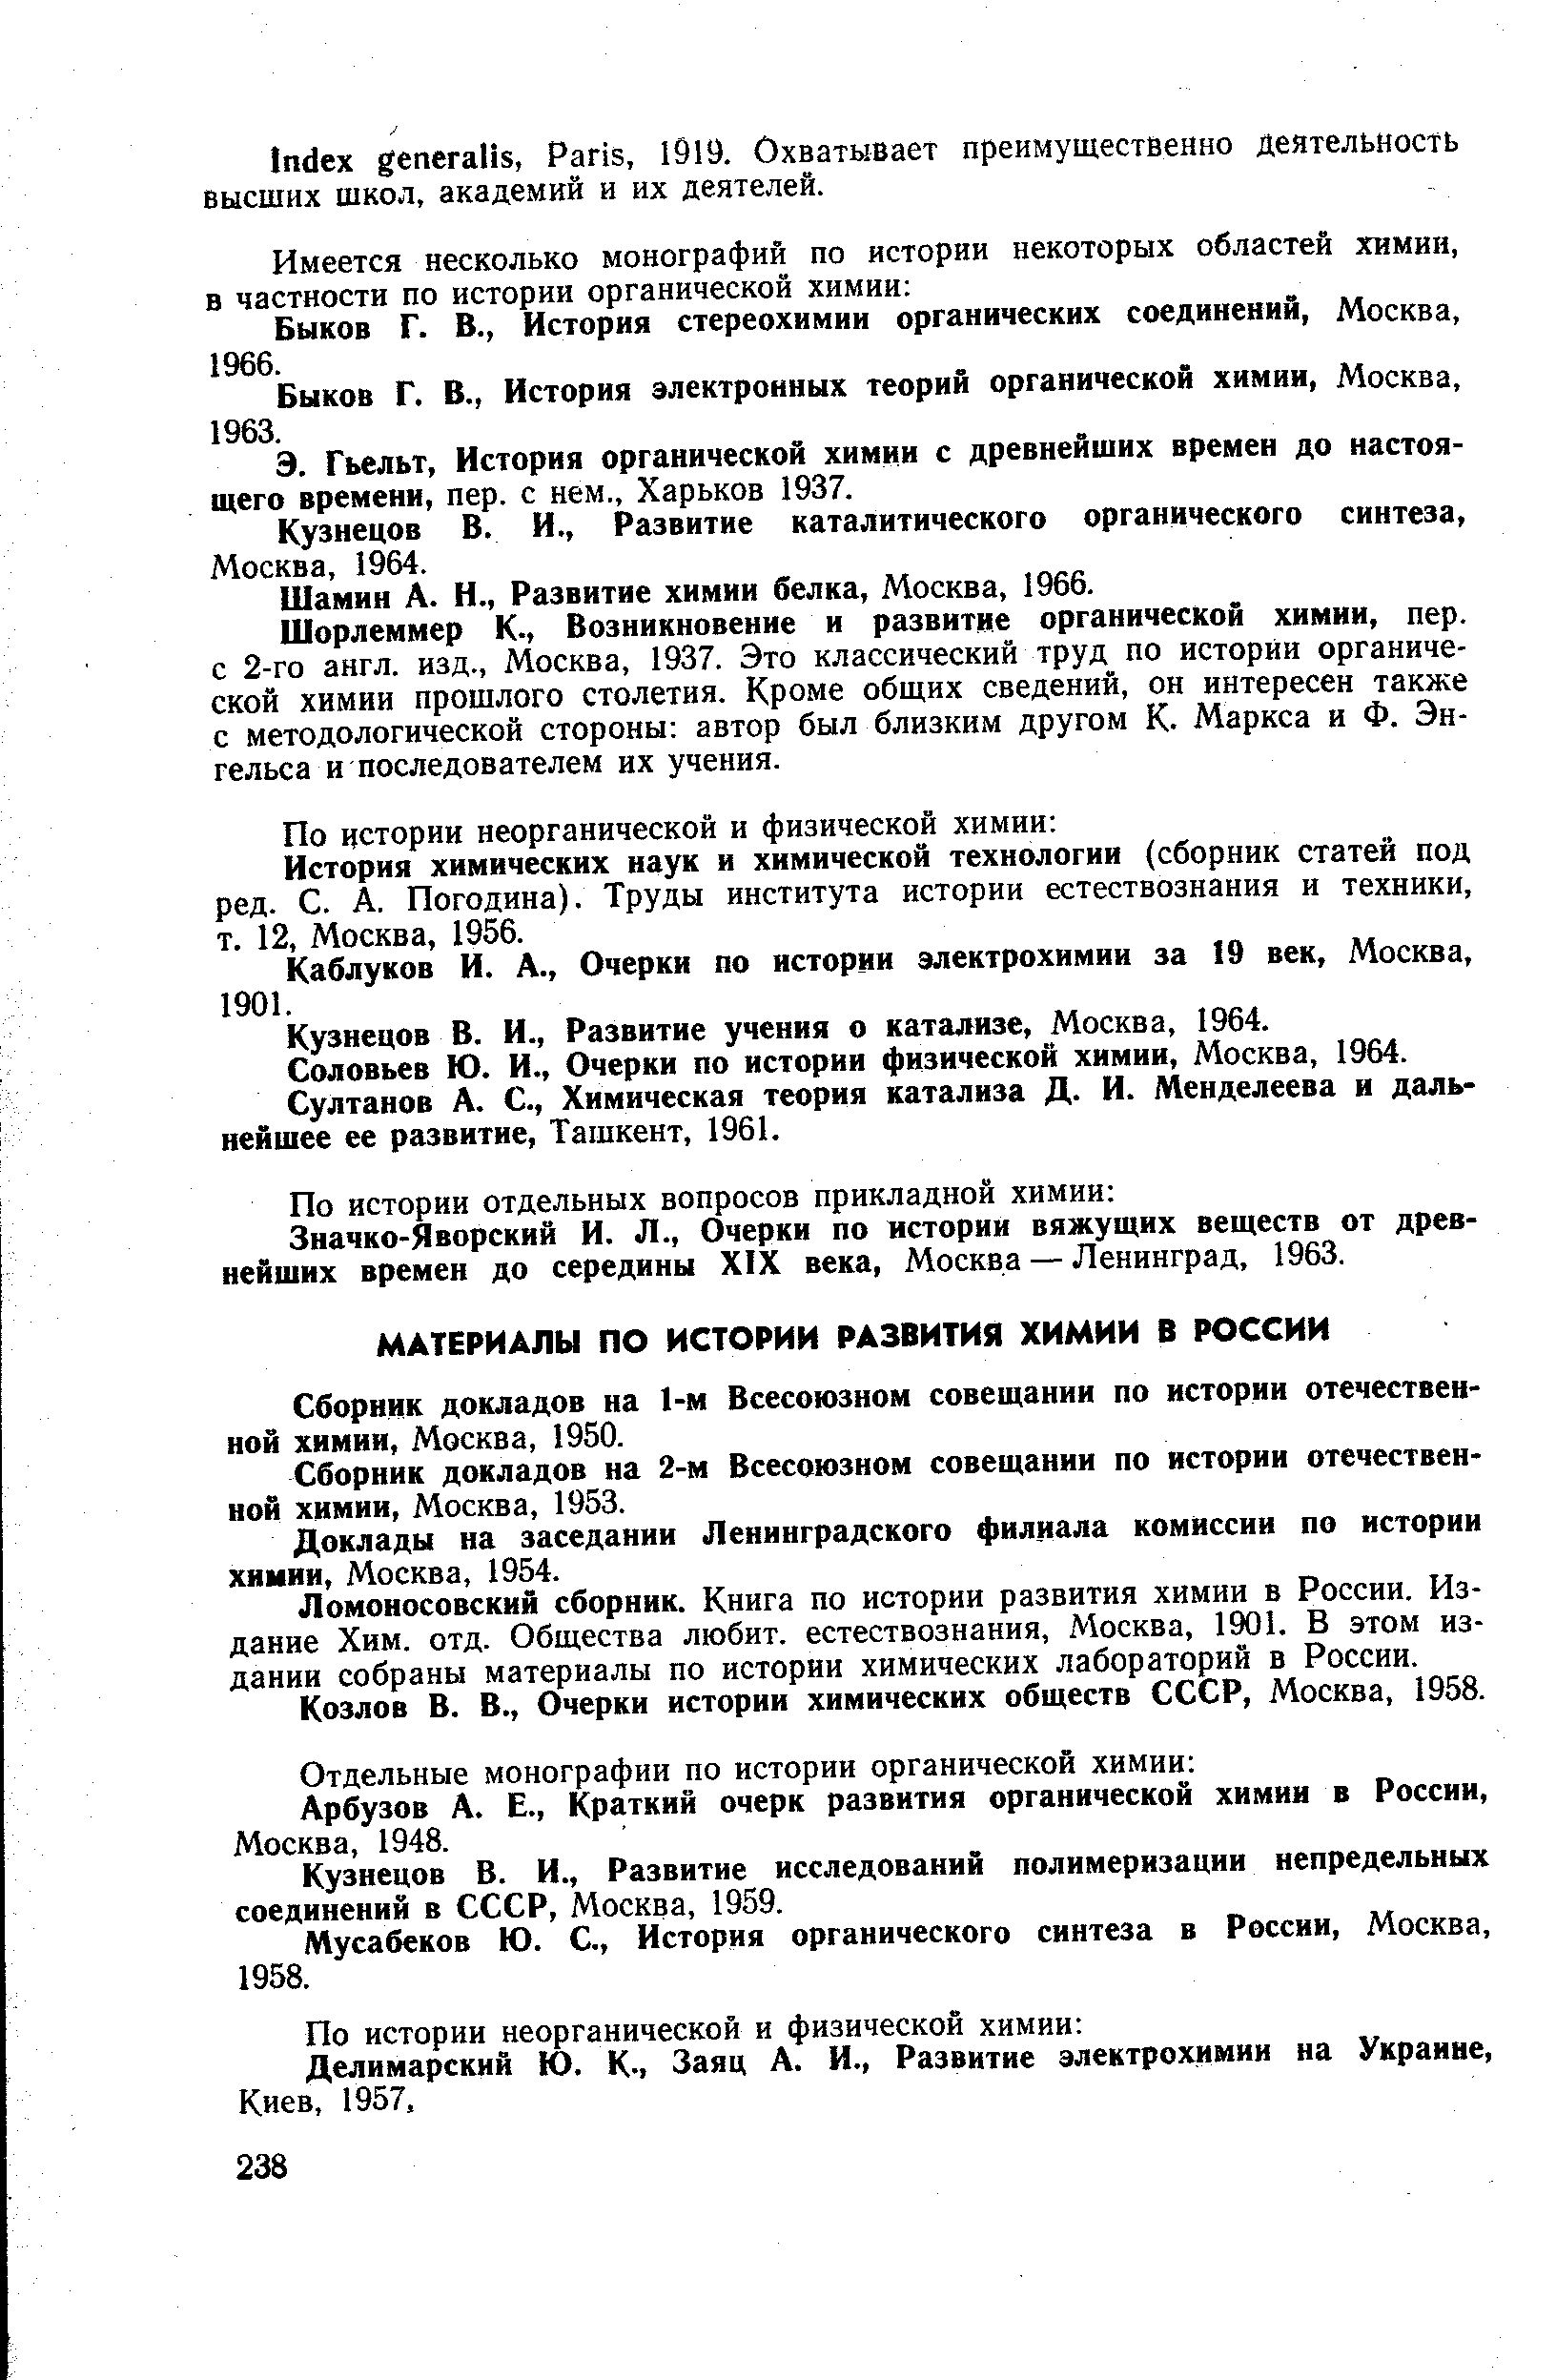 Сборник докладов на 1-м Всесоюзном совещании по истории отечественной химии, Москва, 1950.